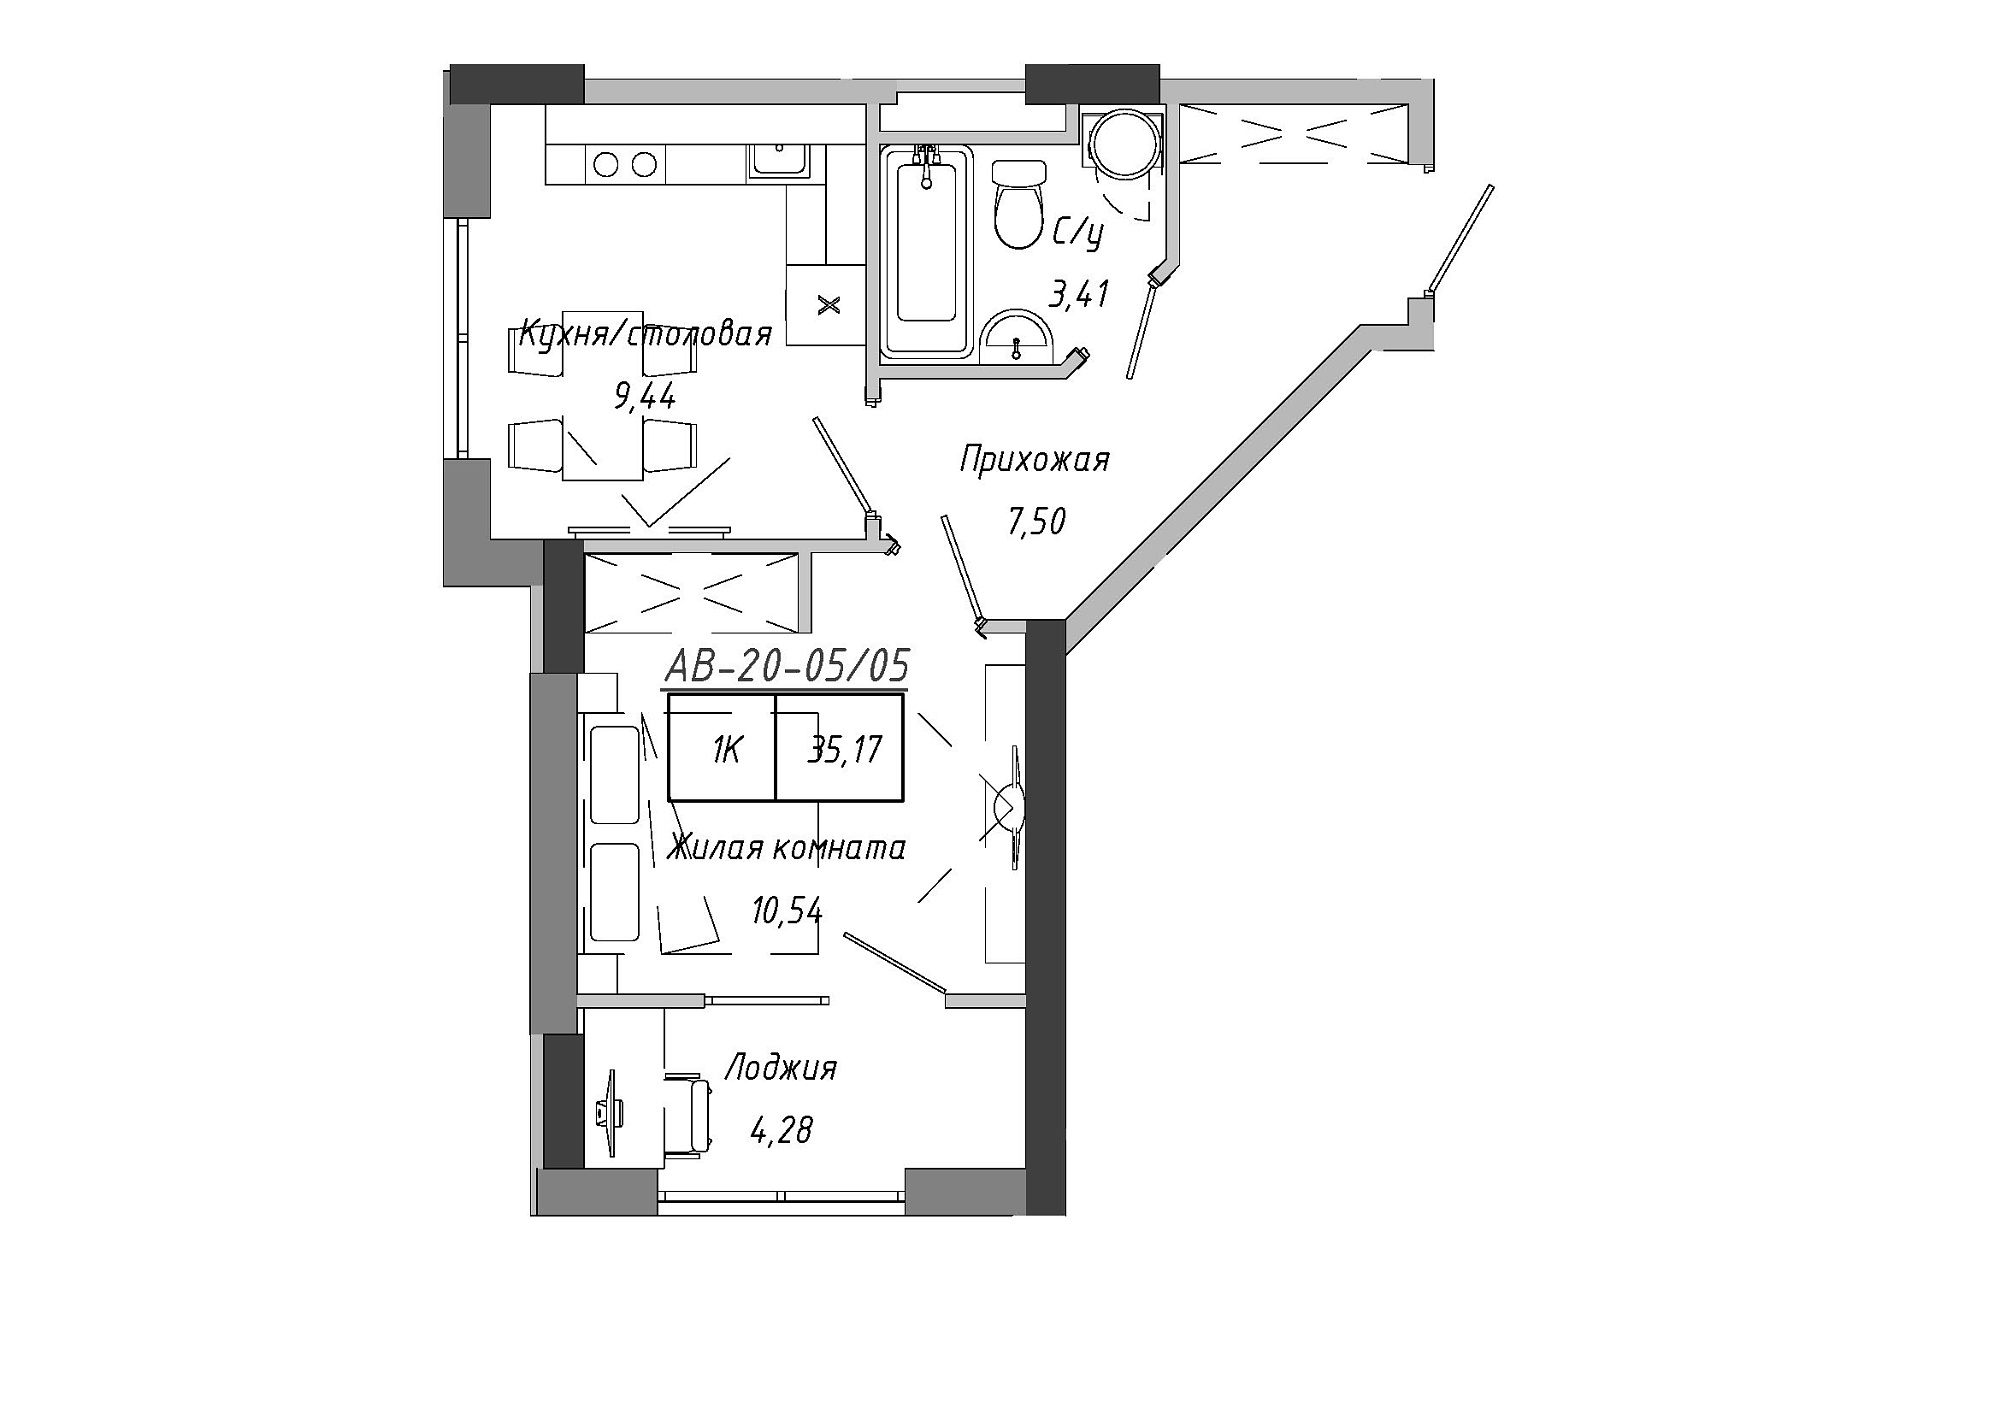 Планировка 1-к квартира площей 33.55м2, AB-20-05/00005.